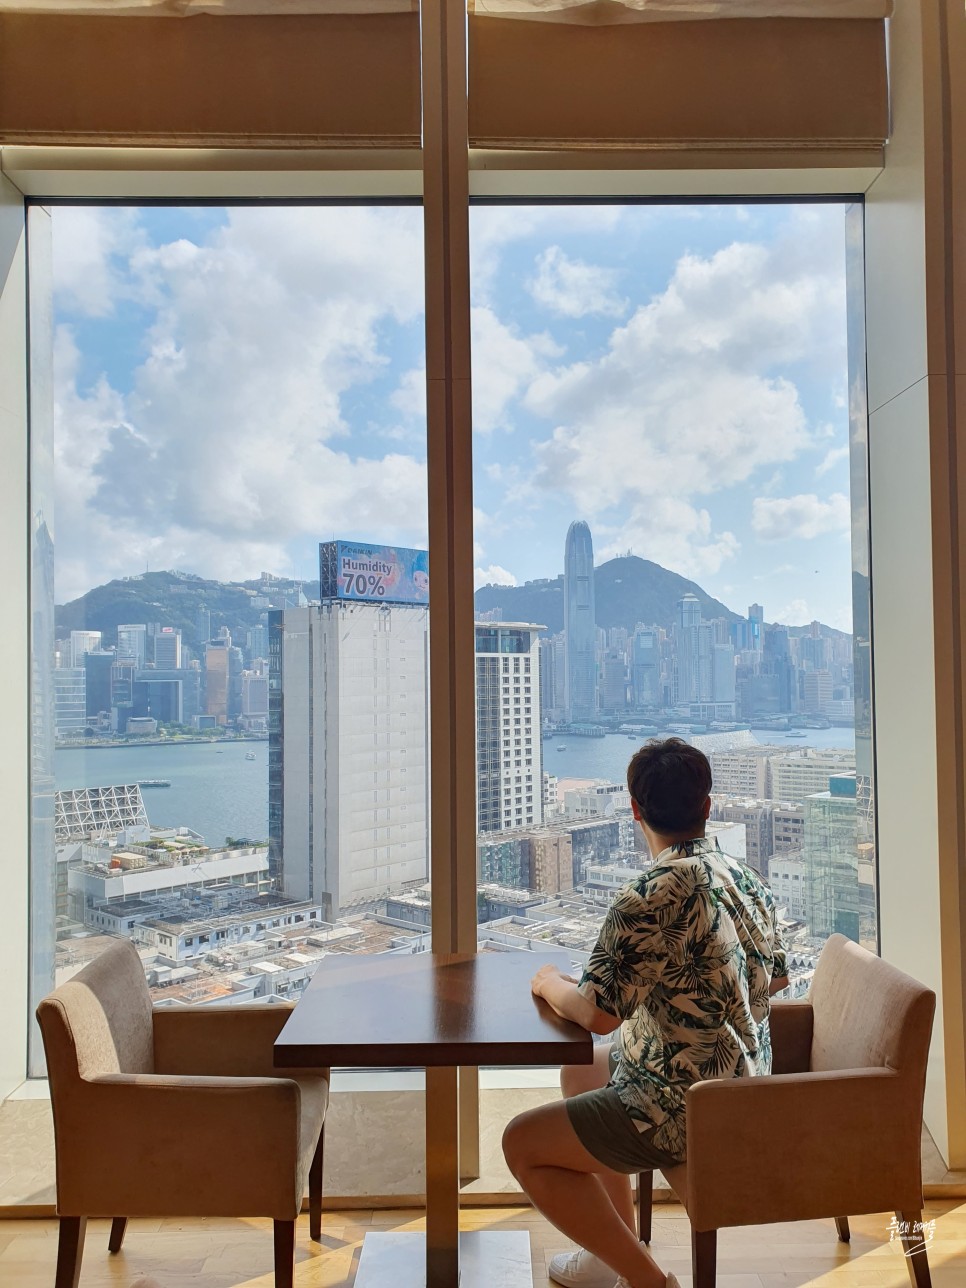 홍콩 여행 숙소 하얏트 리젠시 홍콩 침사추이 호텔 객실 조식 수영장 라운지 후기